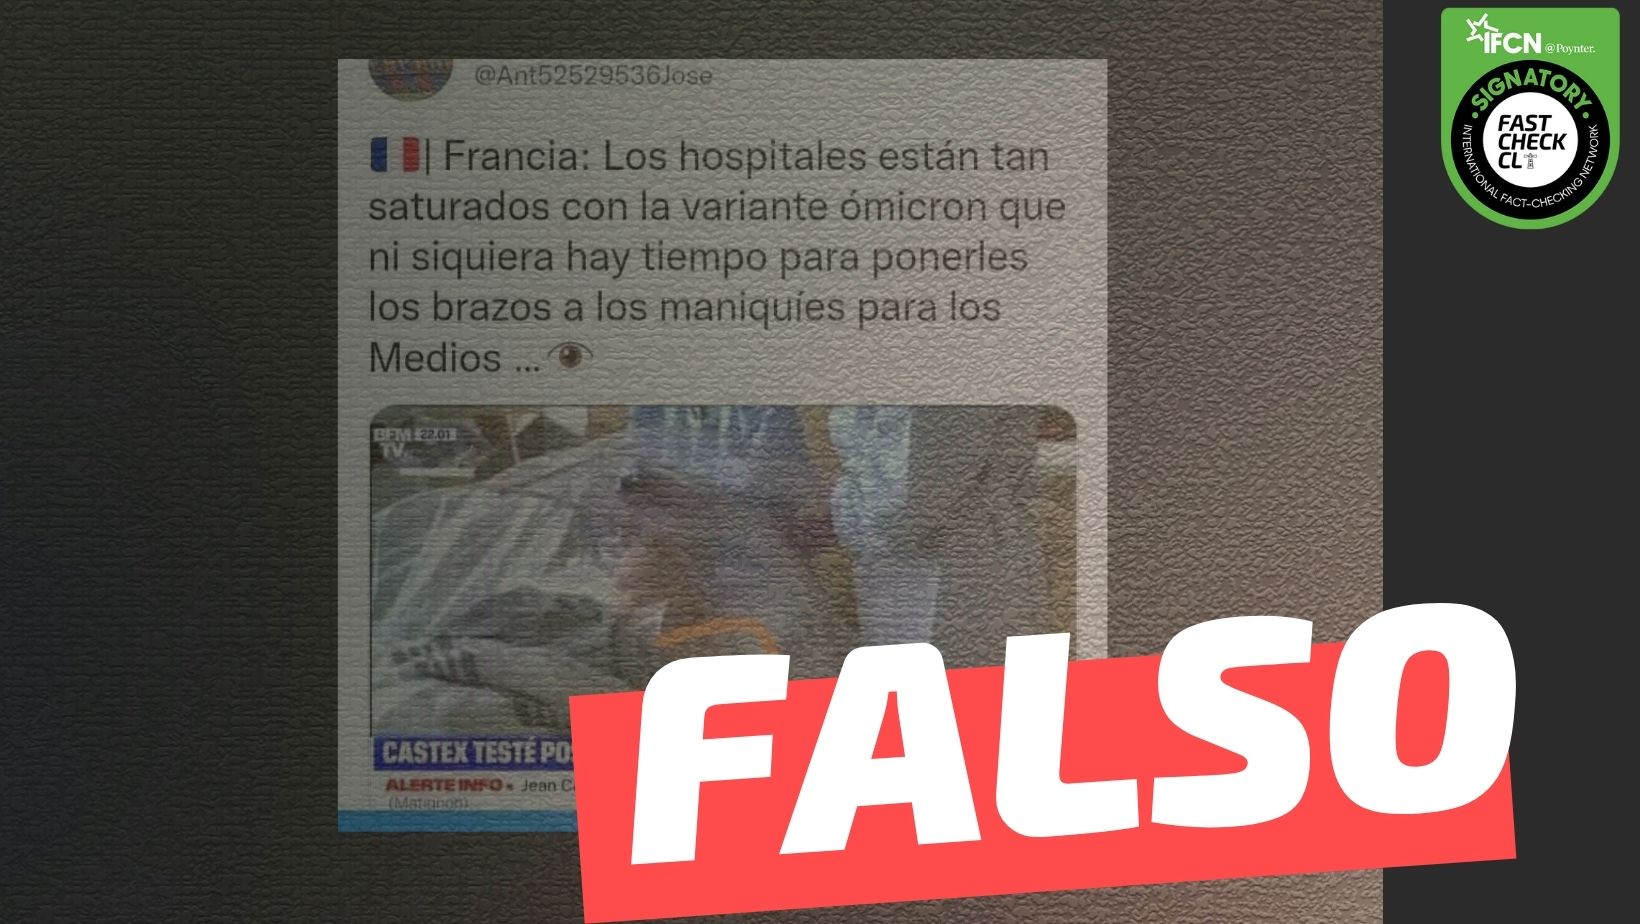 Read more about the article “Francia: Los hospitales están tan saturados con la variante ómicron que ni siquiera hay tiempo para ponerles los brazos a los maniquíes para los medios”: #Falso